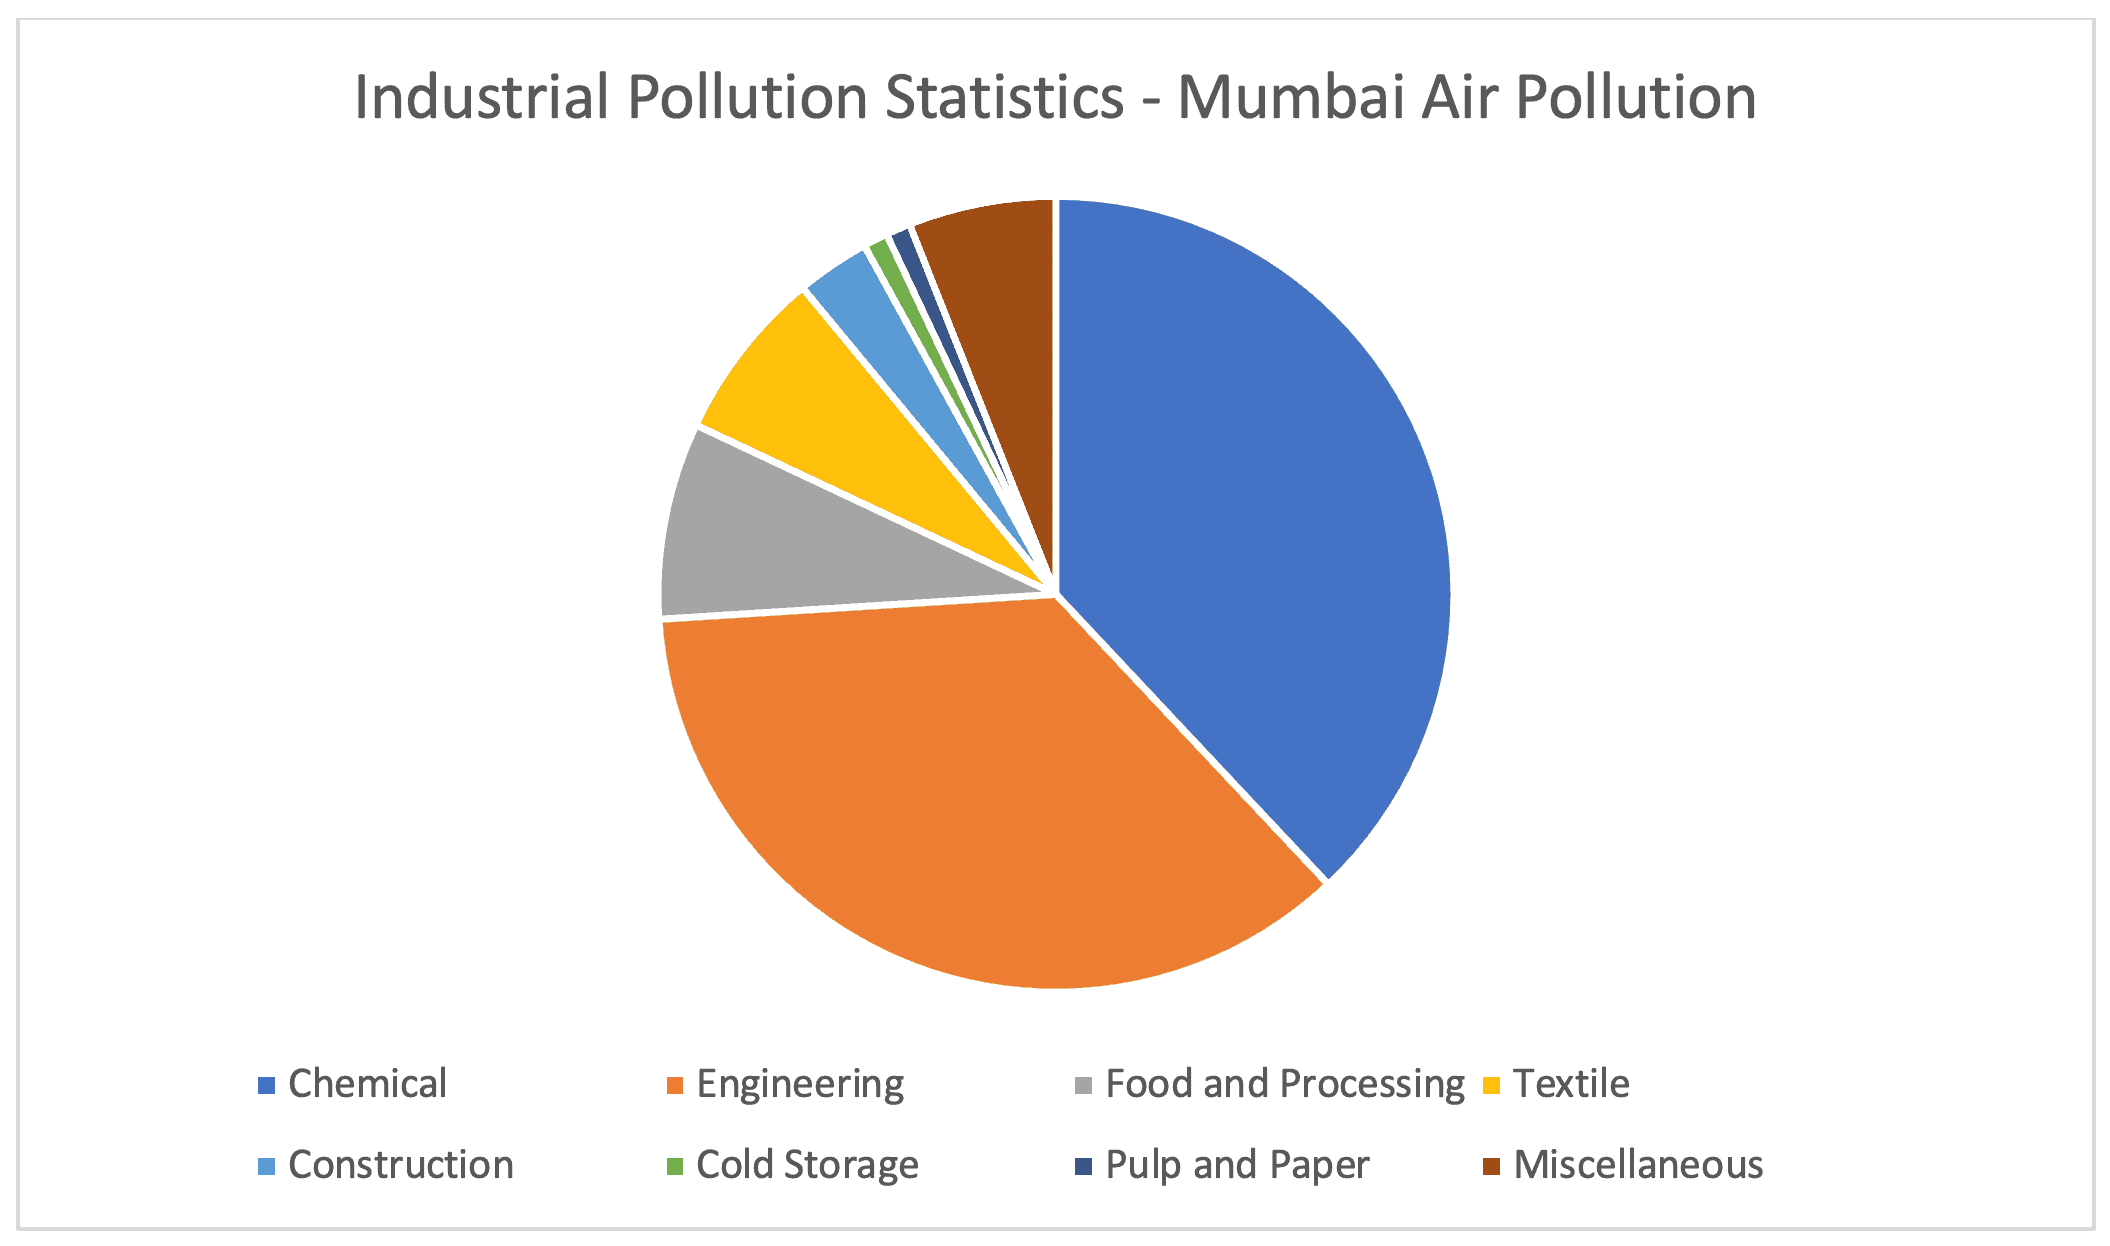 Industrial polluiton in mumbai